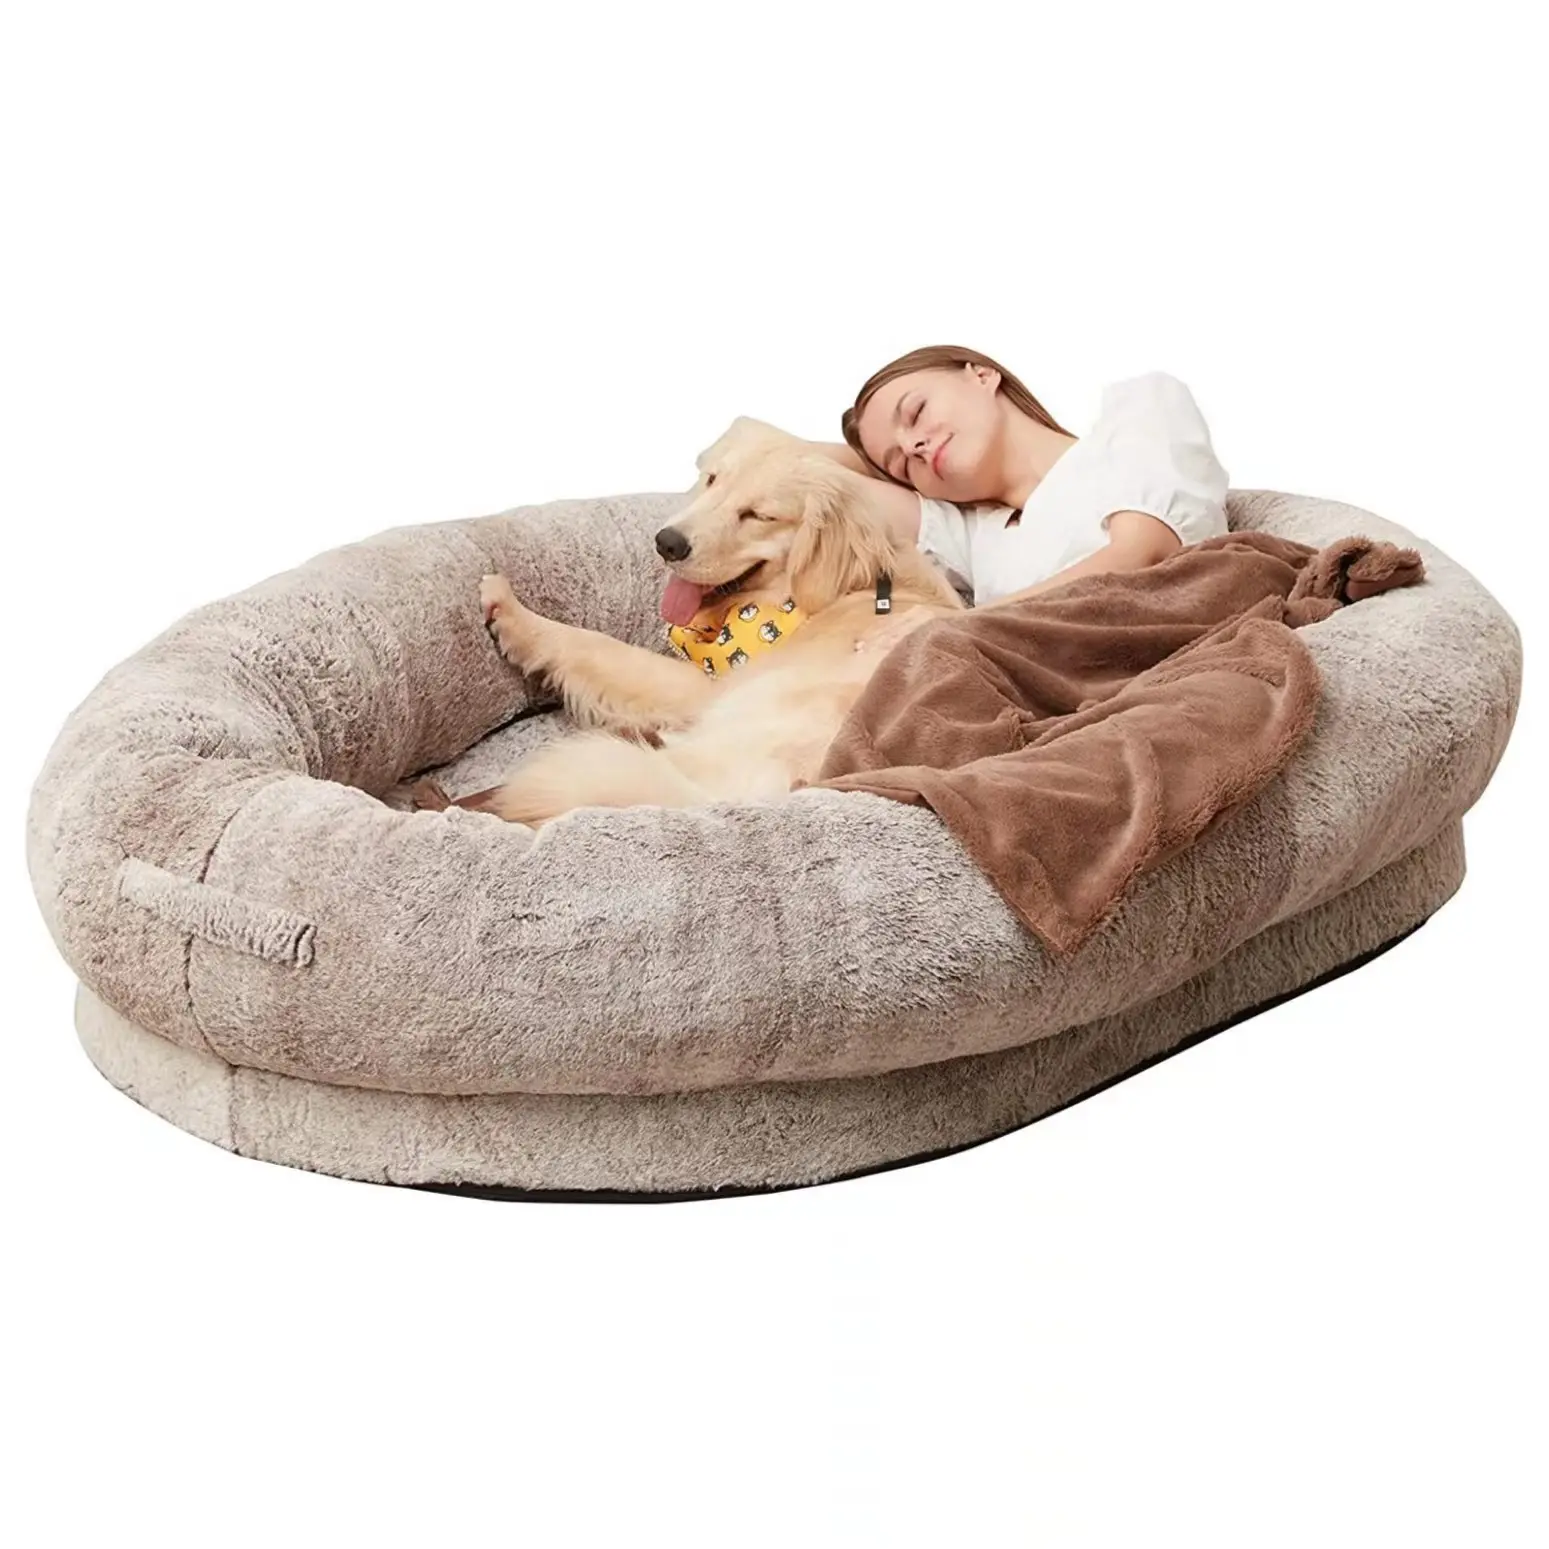 Cama de perro humanoide de lujo más vendida, cama gigante con PUF/funda de piel lavable, cama de perro humano gigante para mascotas adultas de felpa